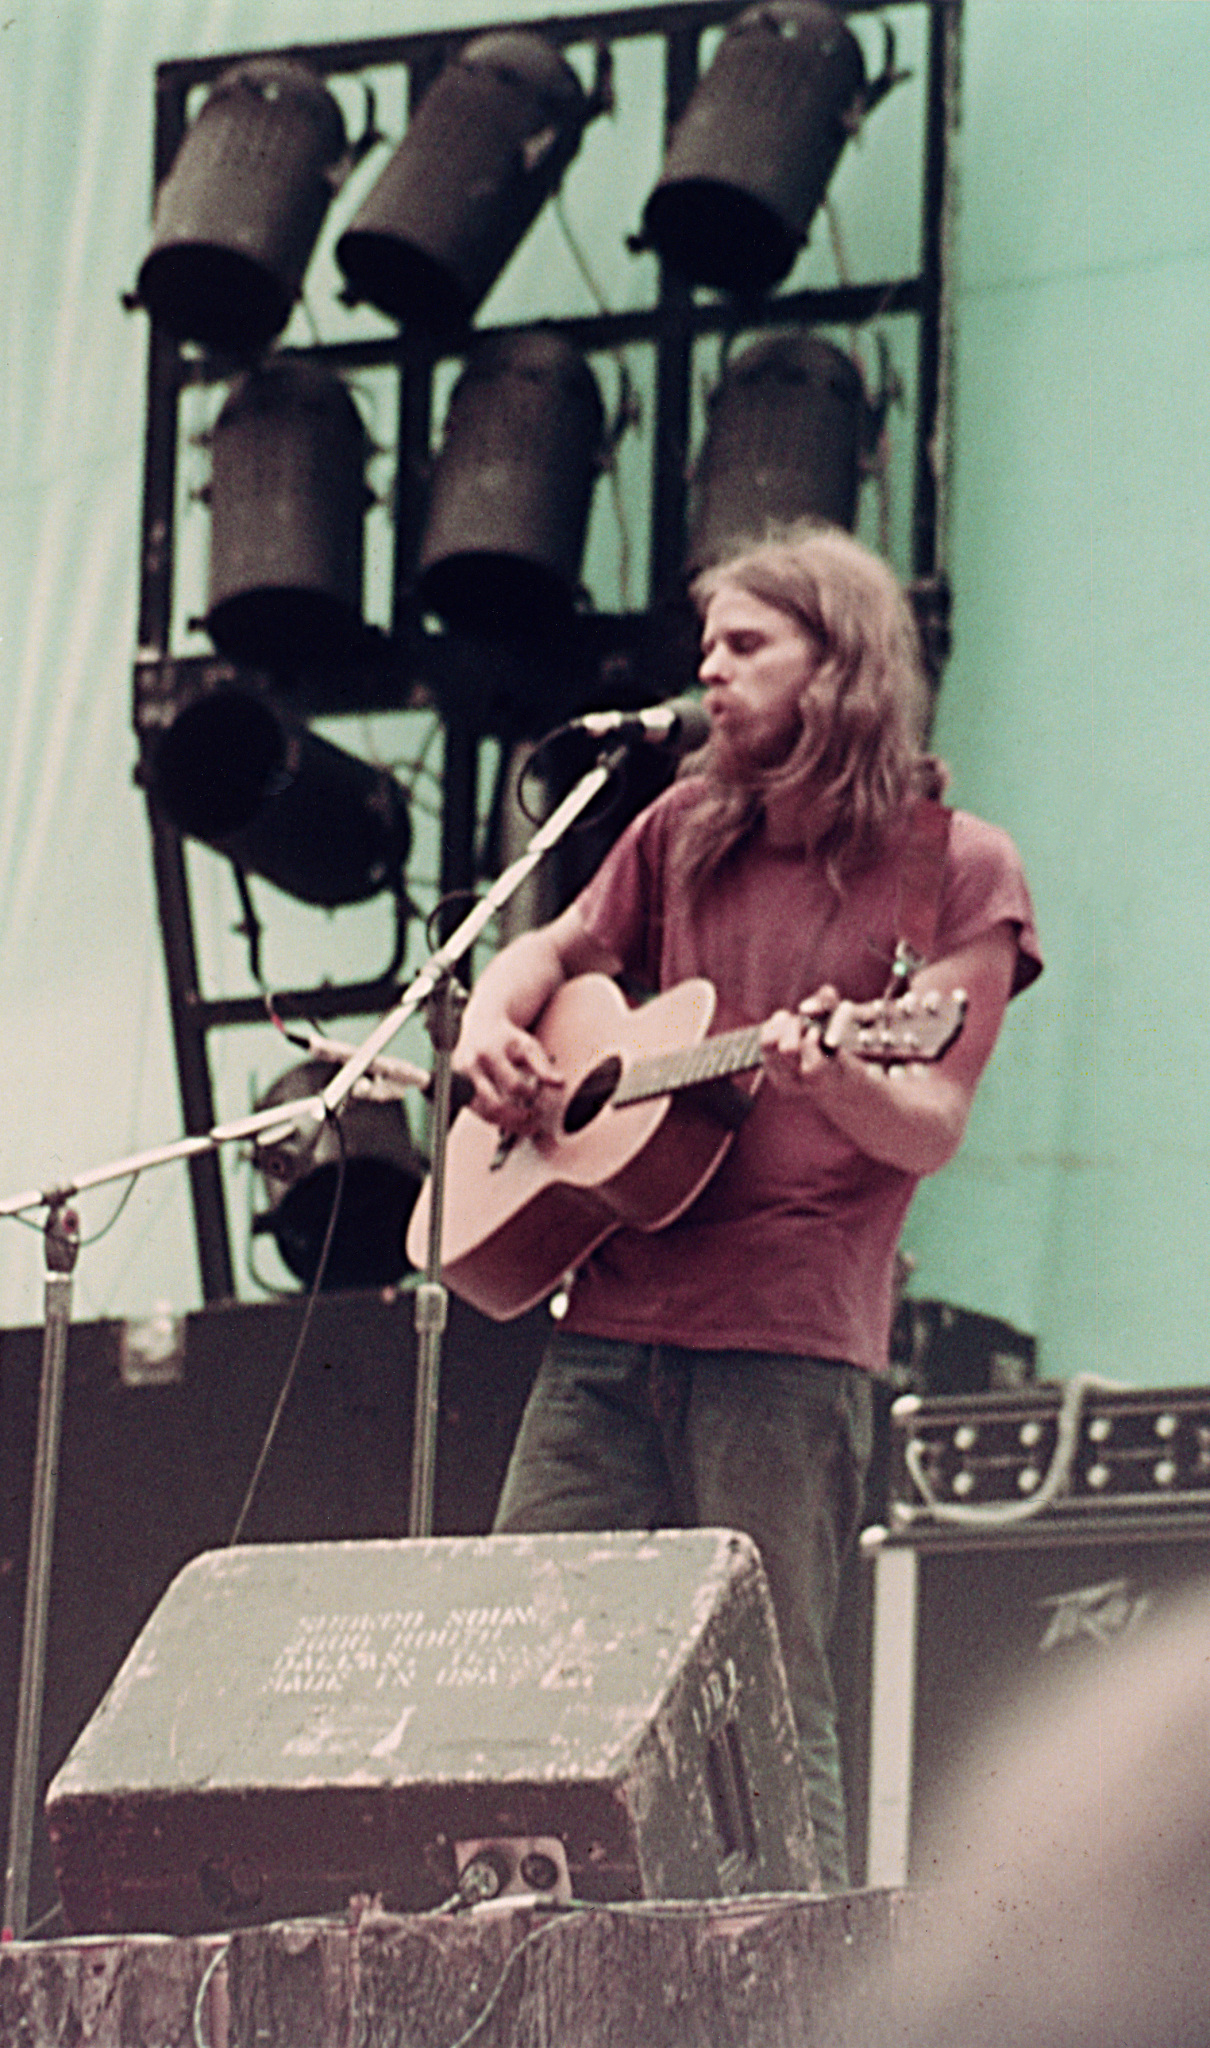 Bob at Arkansas Folk Festival, 1973